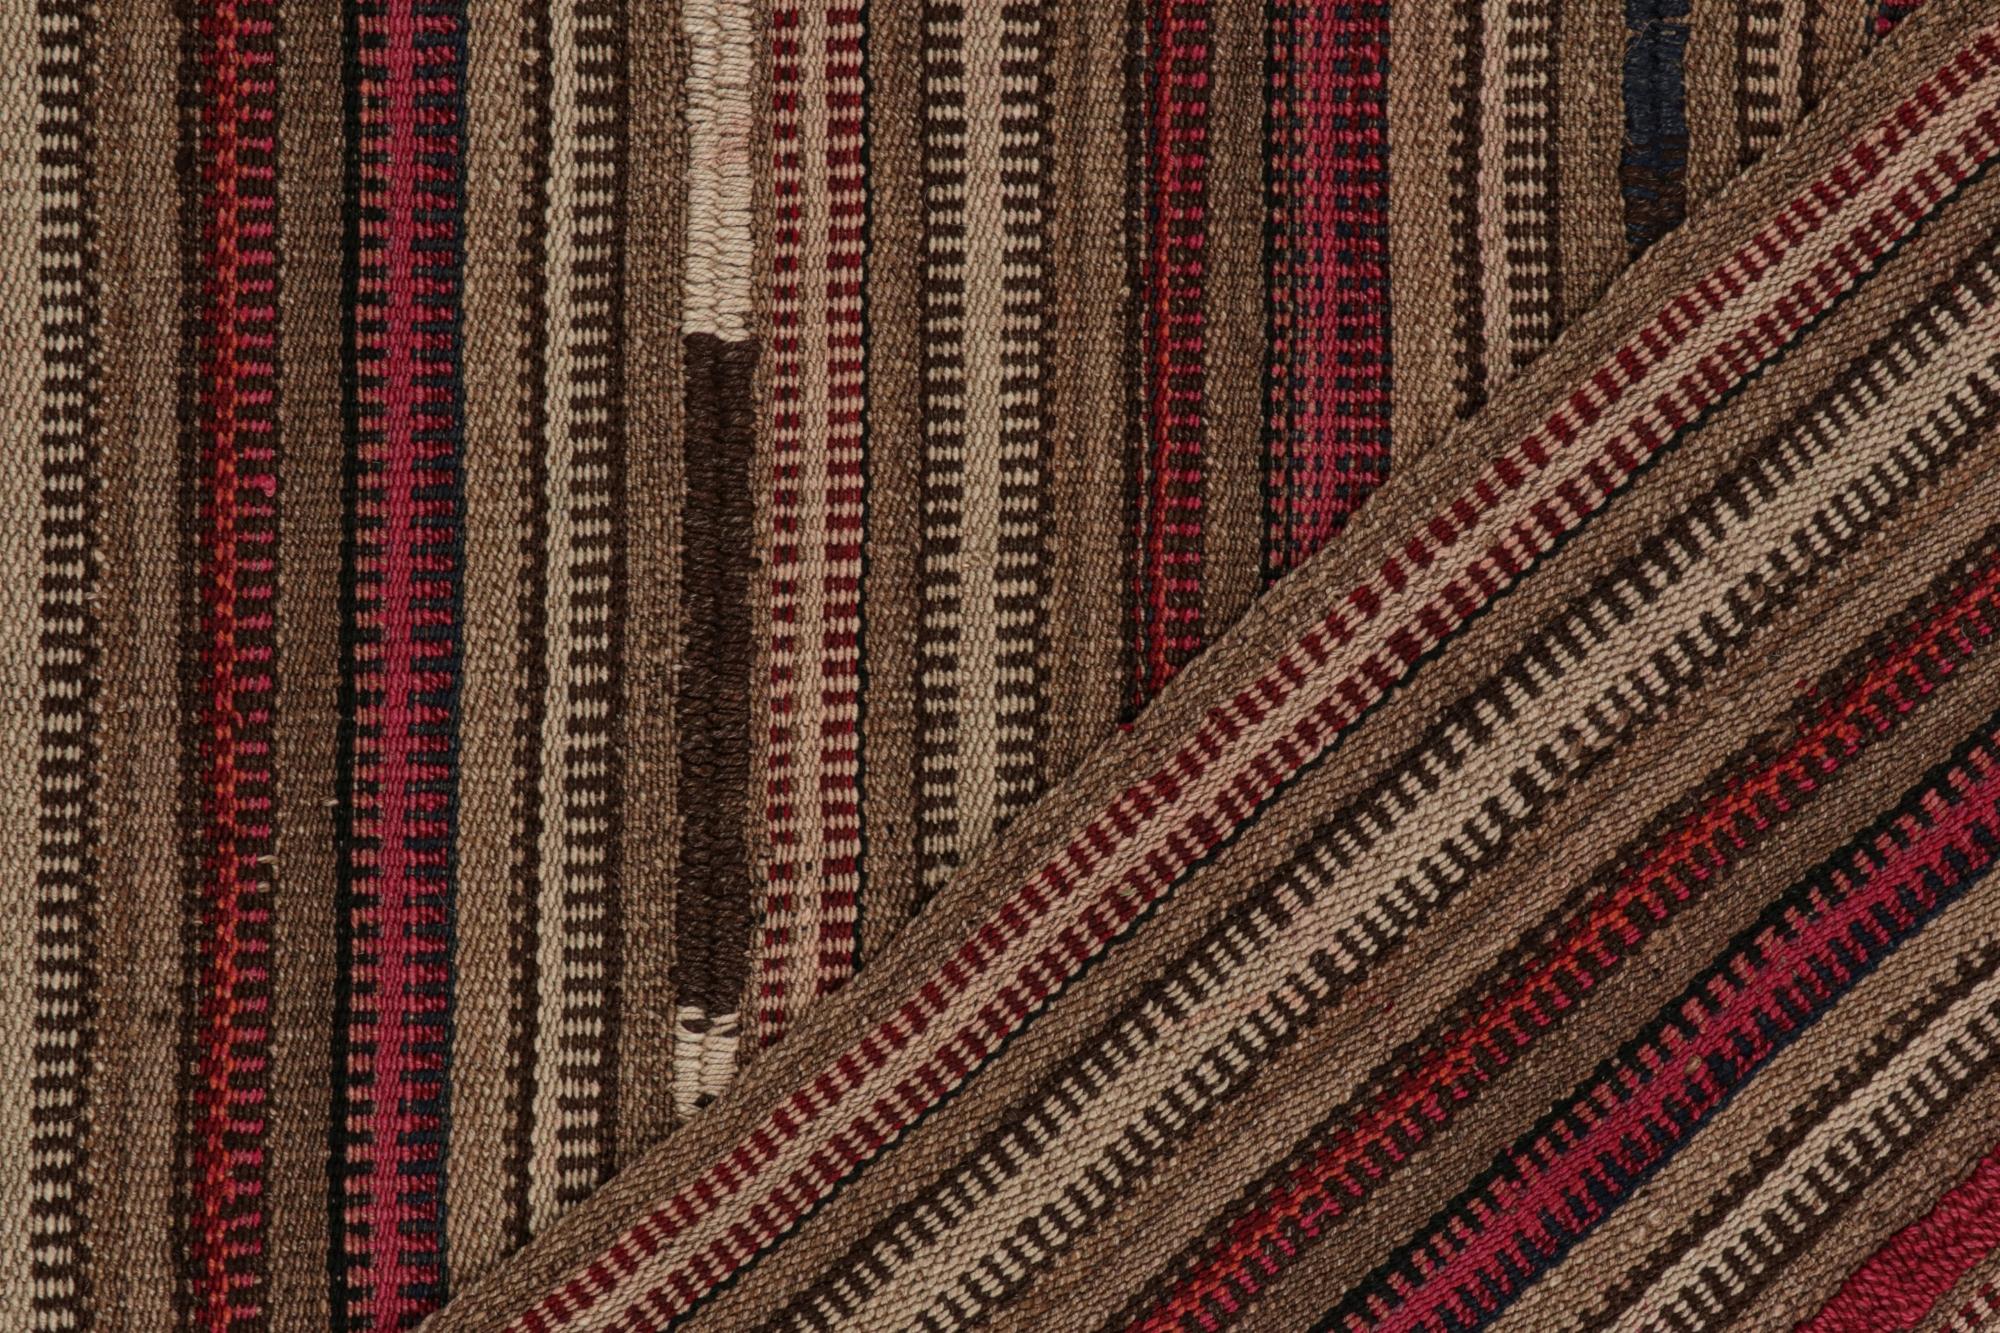 Wool Vintage Persian Kilim in Pink and Beige-Brown Stripes by Rug & Kilim For Sale